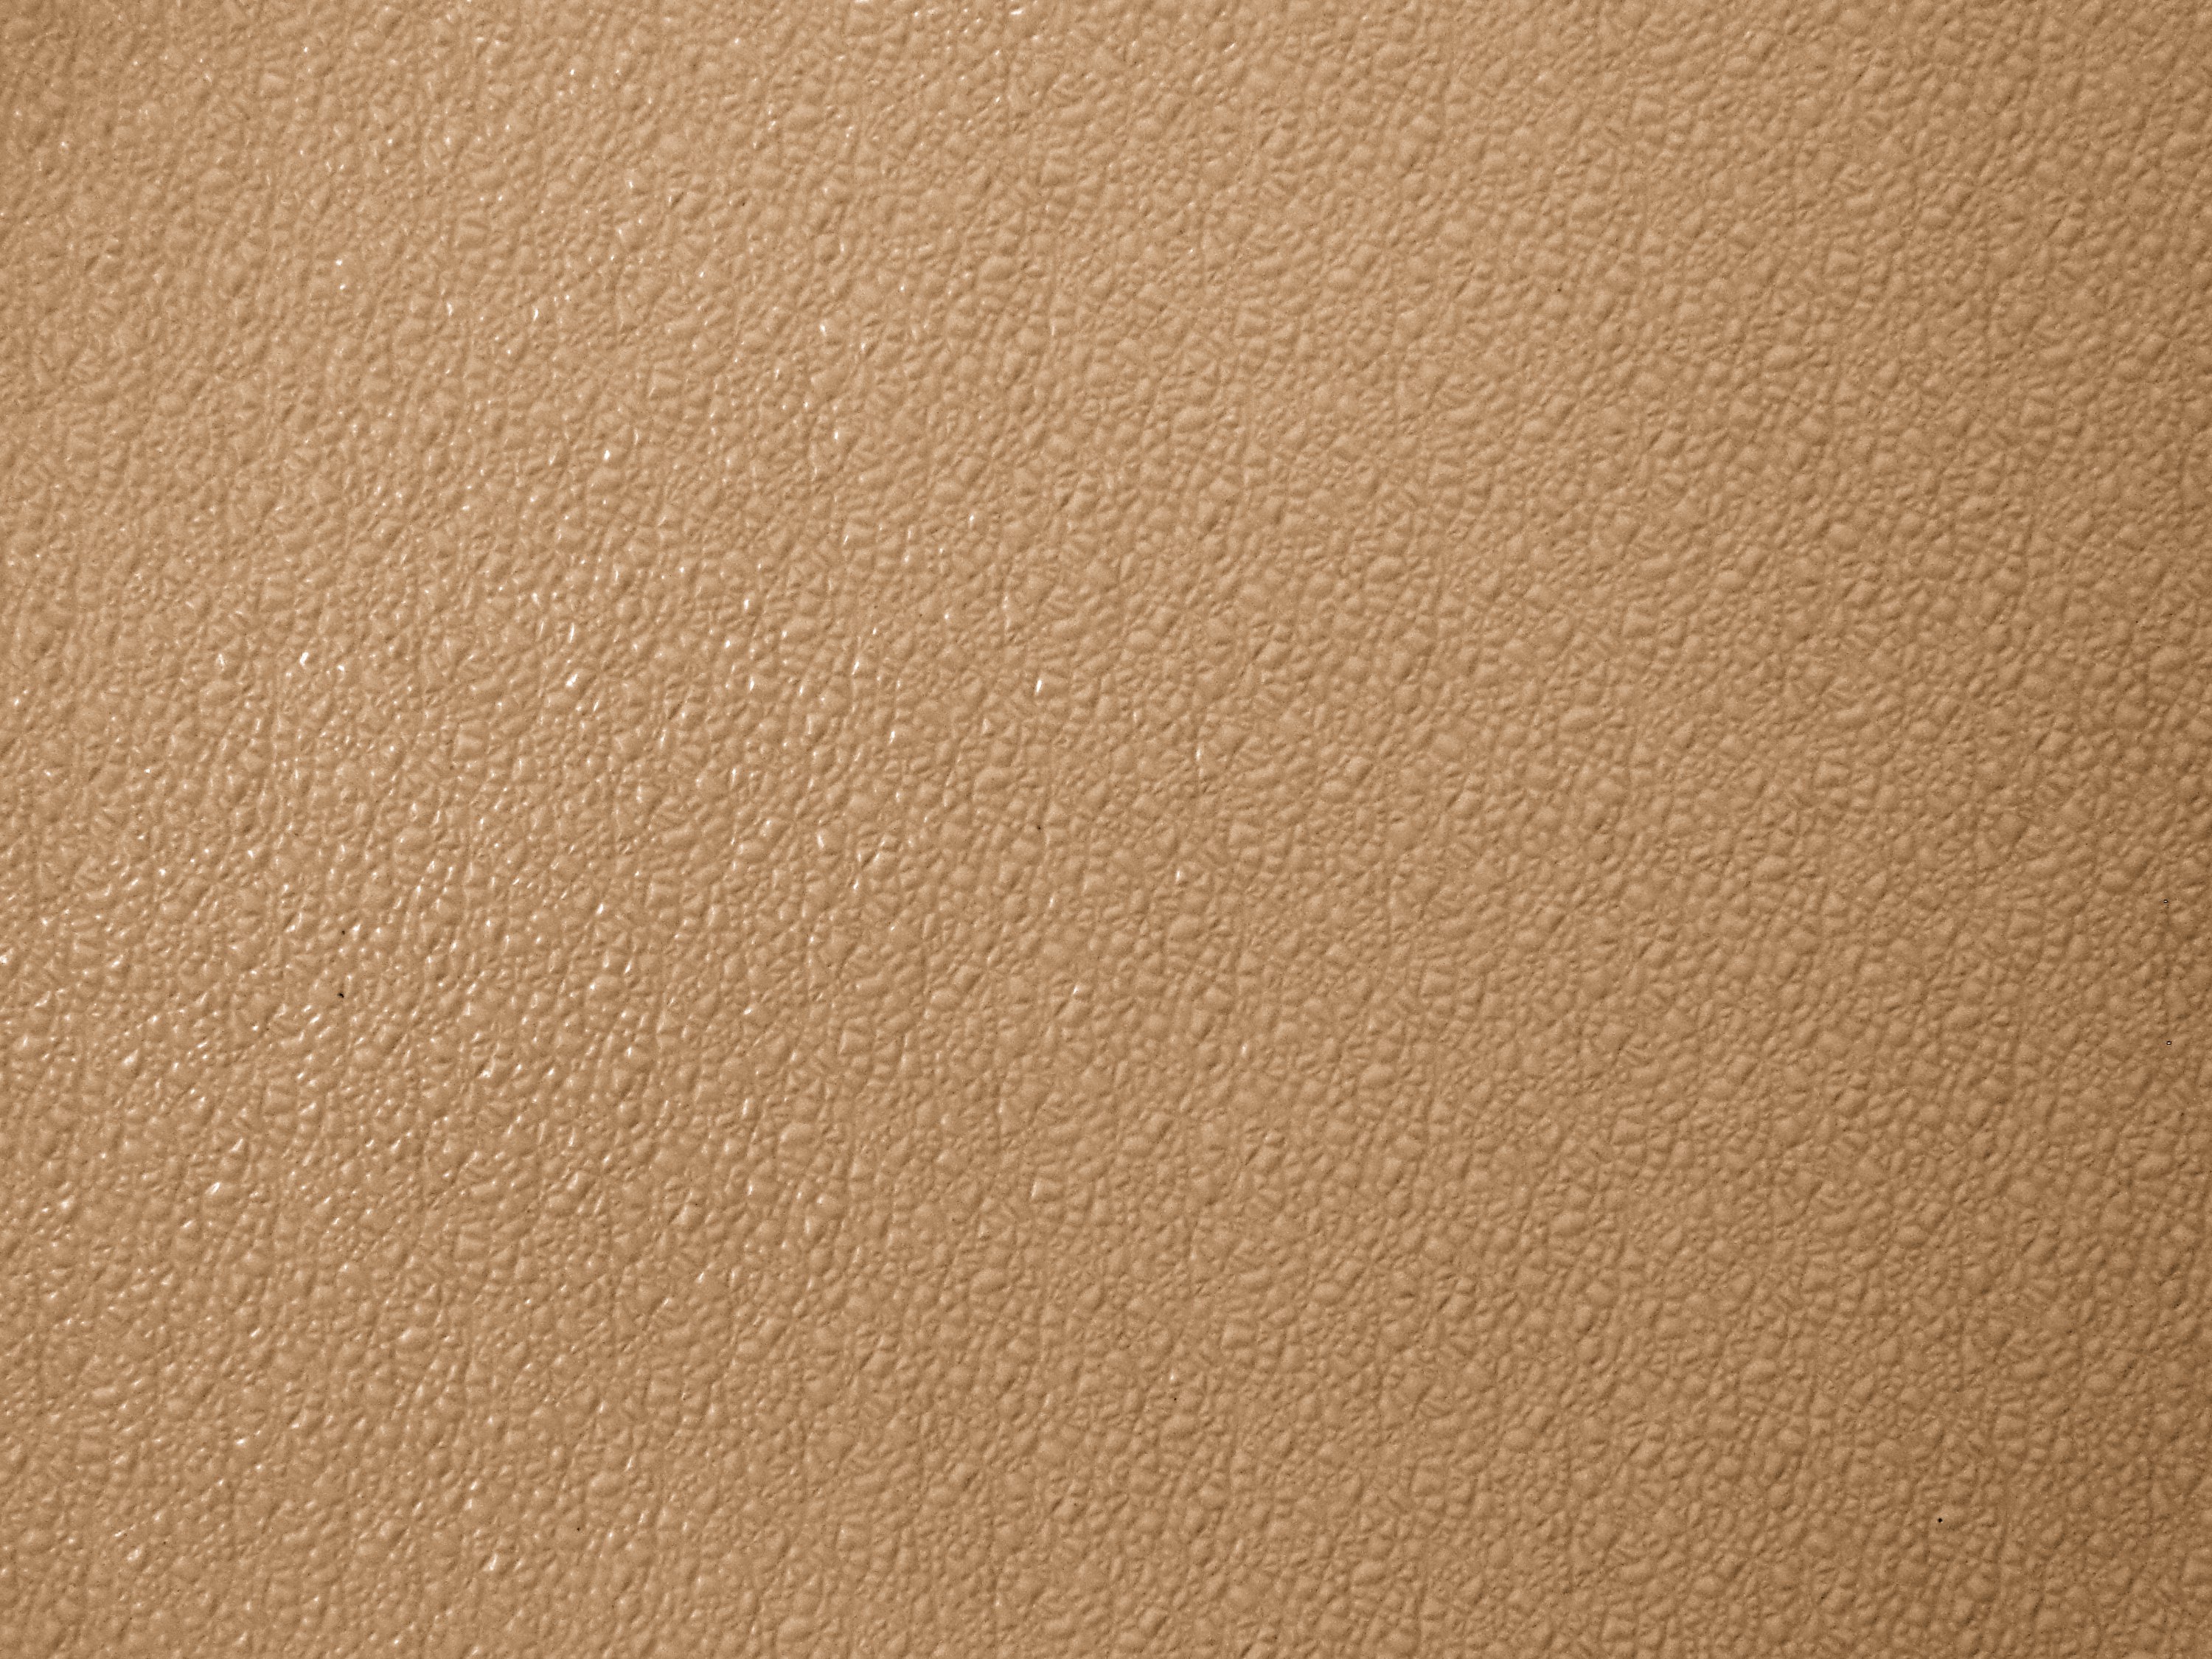 Bumpy Tan Plastic Texture Picture | Free Photograph | Photos Public ...